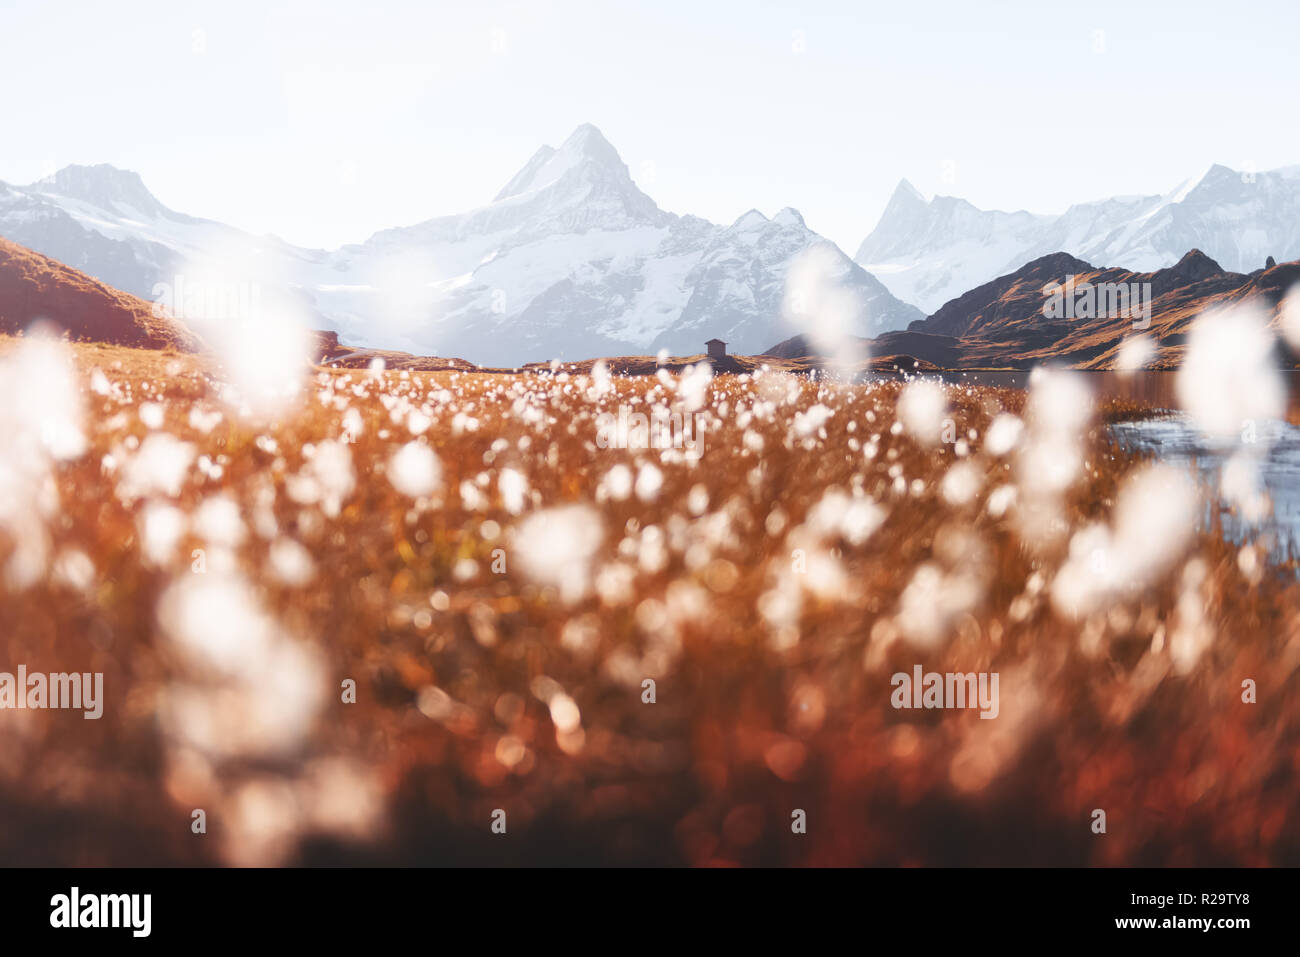 Malerischer Blick auf den See Bachalpsee in den Schweizer Alpen. Schneebedeckten Gipfel des Wetterhorns Rosenhorn, Mittelhorn und für den Hintergrund. Tal von Grindelwald Stockfoto